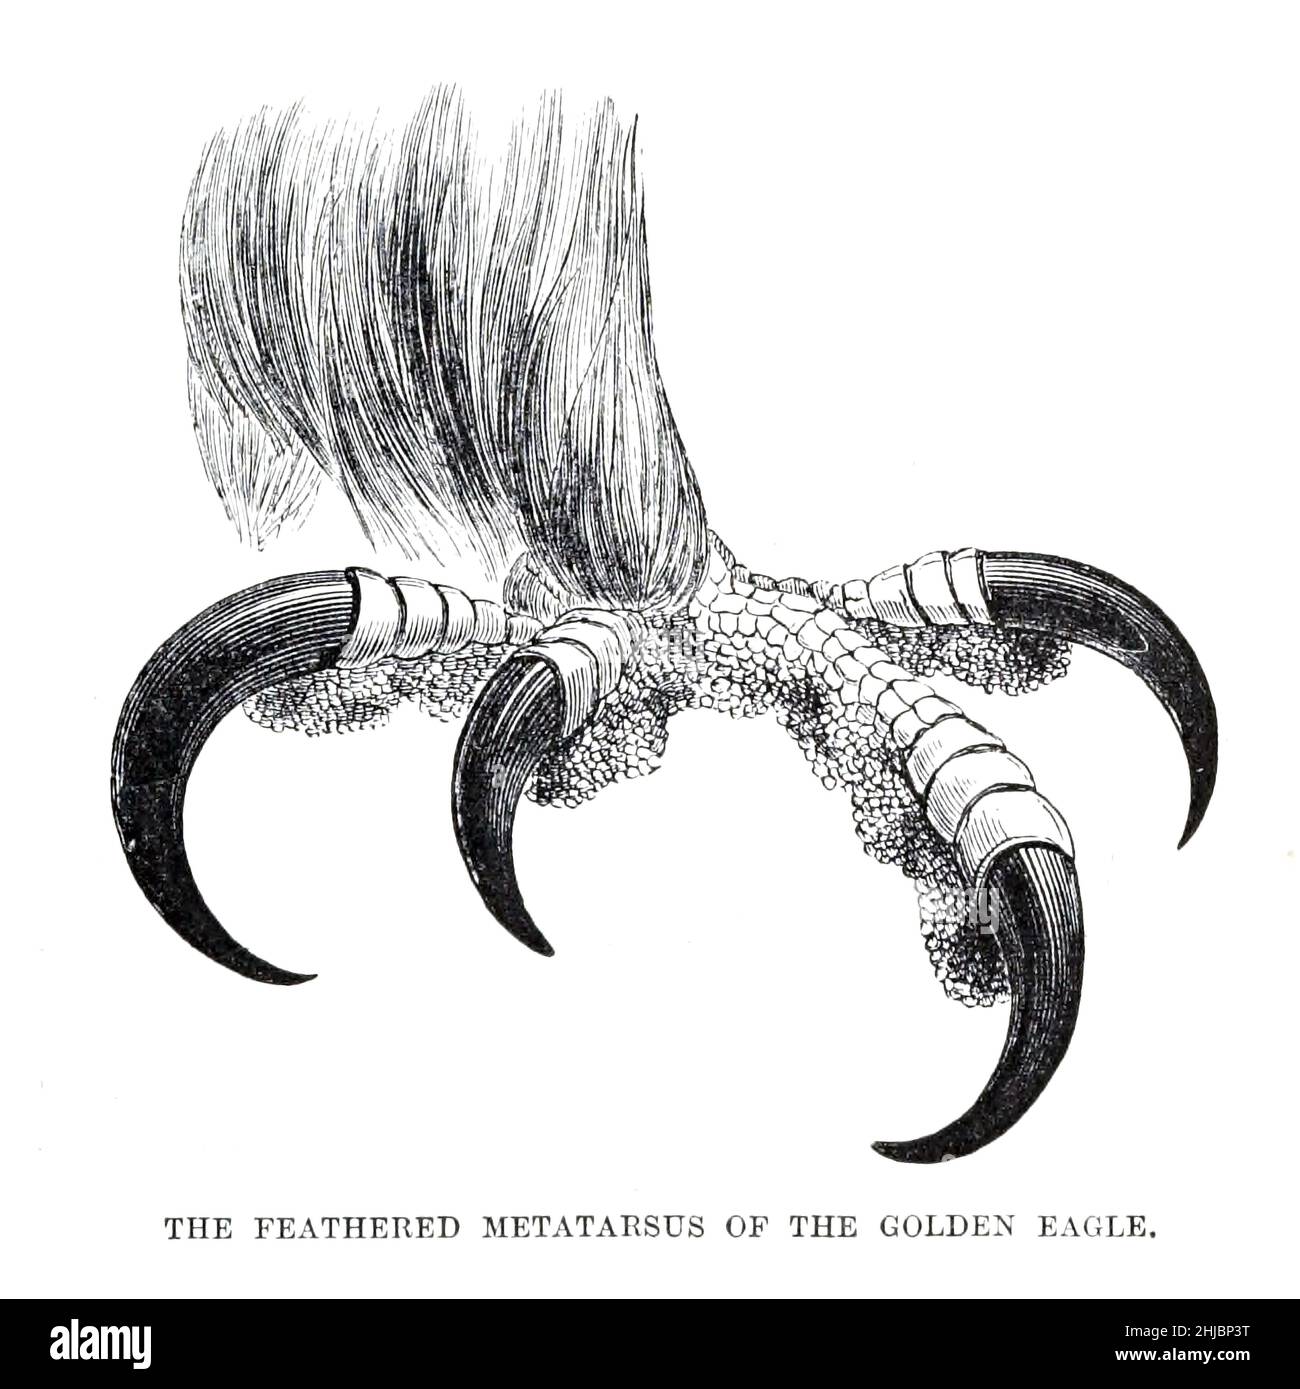 Der gefiederte Metatarsus des Goldenen Adlers aus der königlichen Naturgeschichte herausgegeben von Richard Lydekker, Band IV veröffentlicht im Jahr 1895 Stockfoto